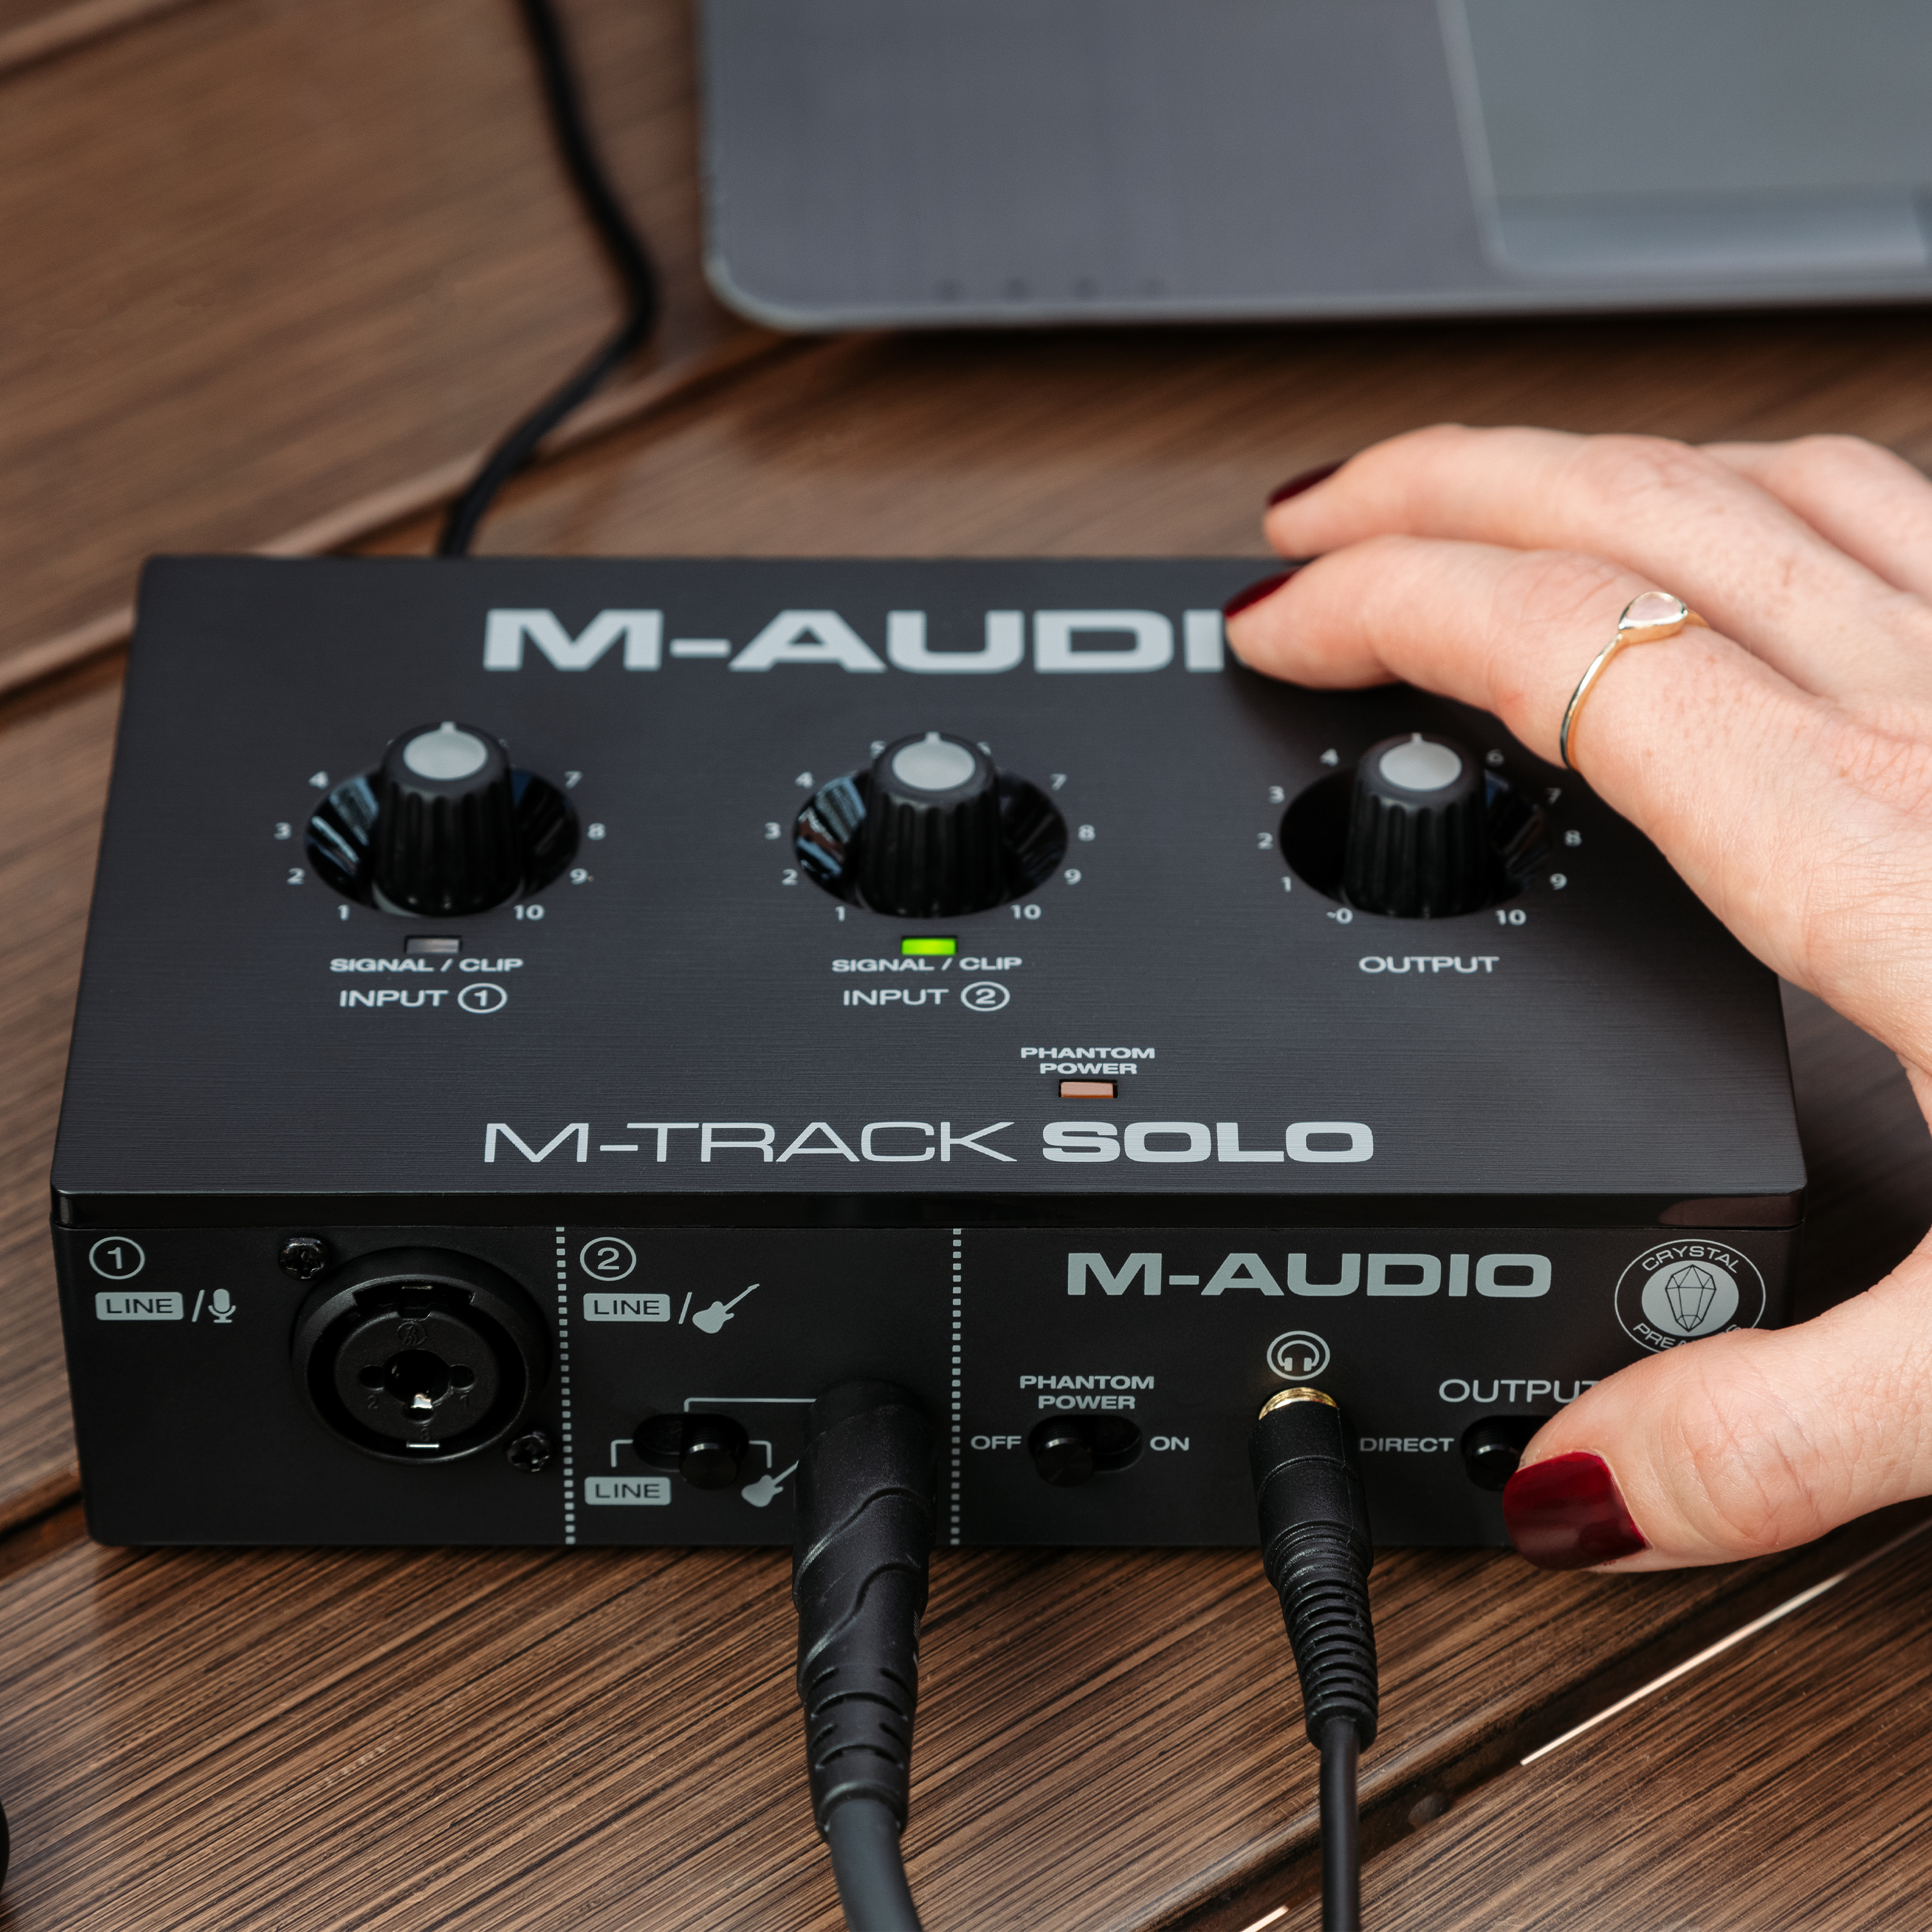 M-Audio】格安オーディオインターフェース「M-Track Duo」「M-Track Solo」安くても基本性能が抜群 |  DJ機材/PCDJ/電子ドラム/ミュージックハウスフレンズ